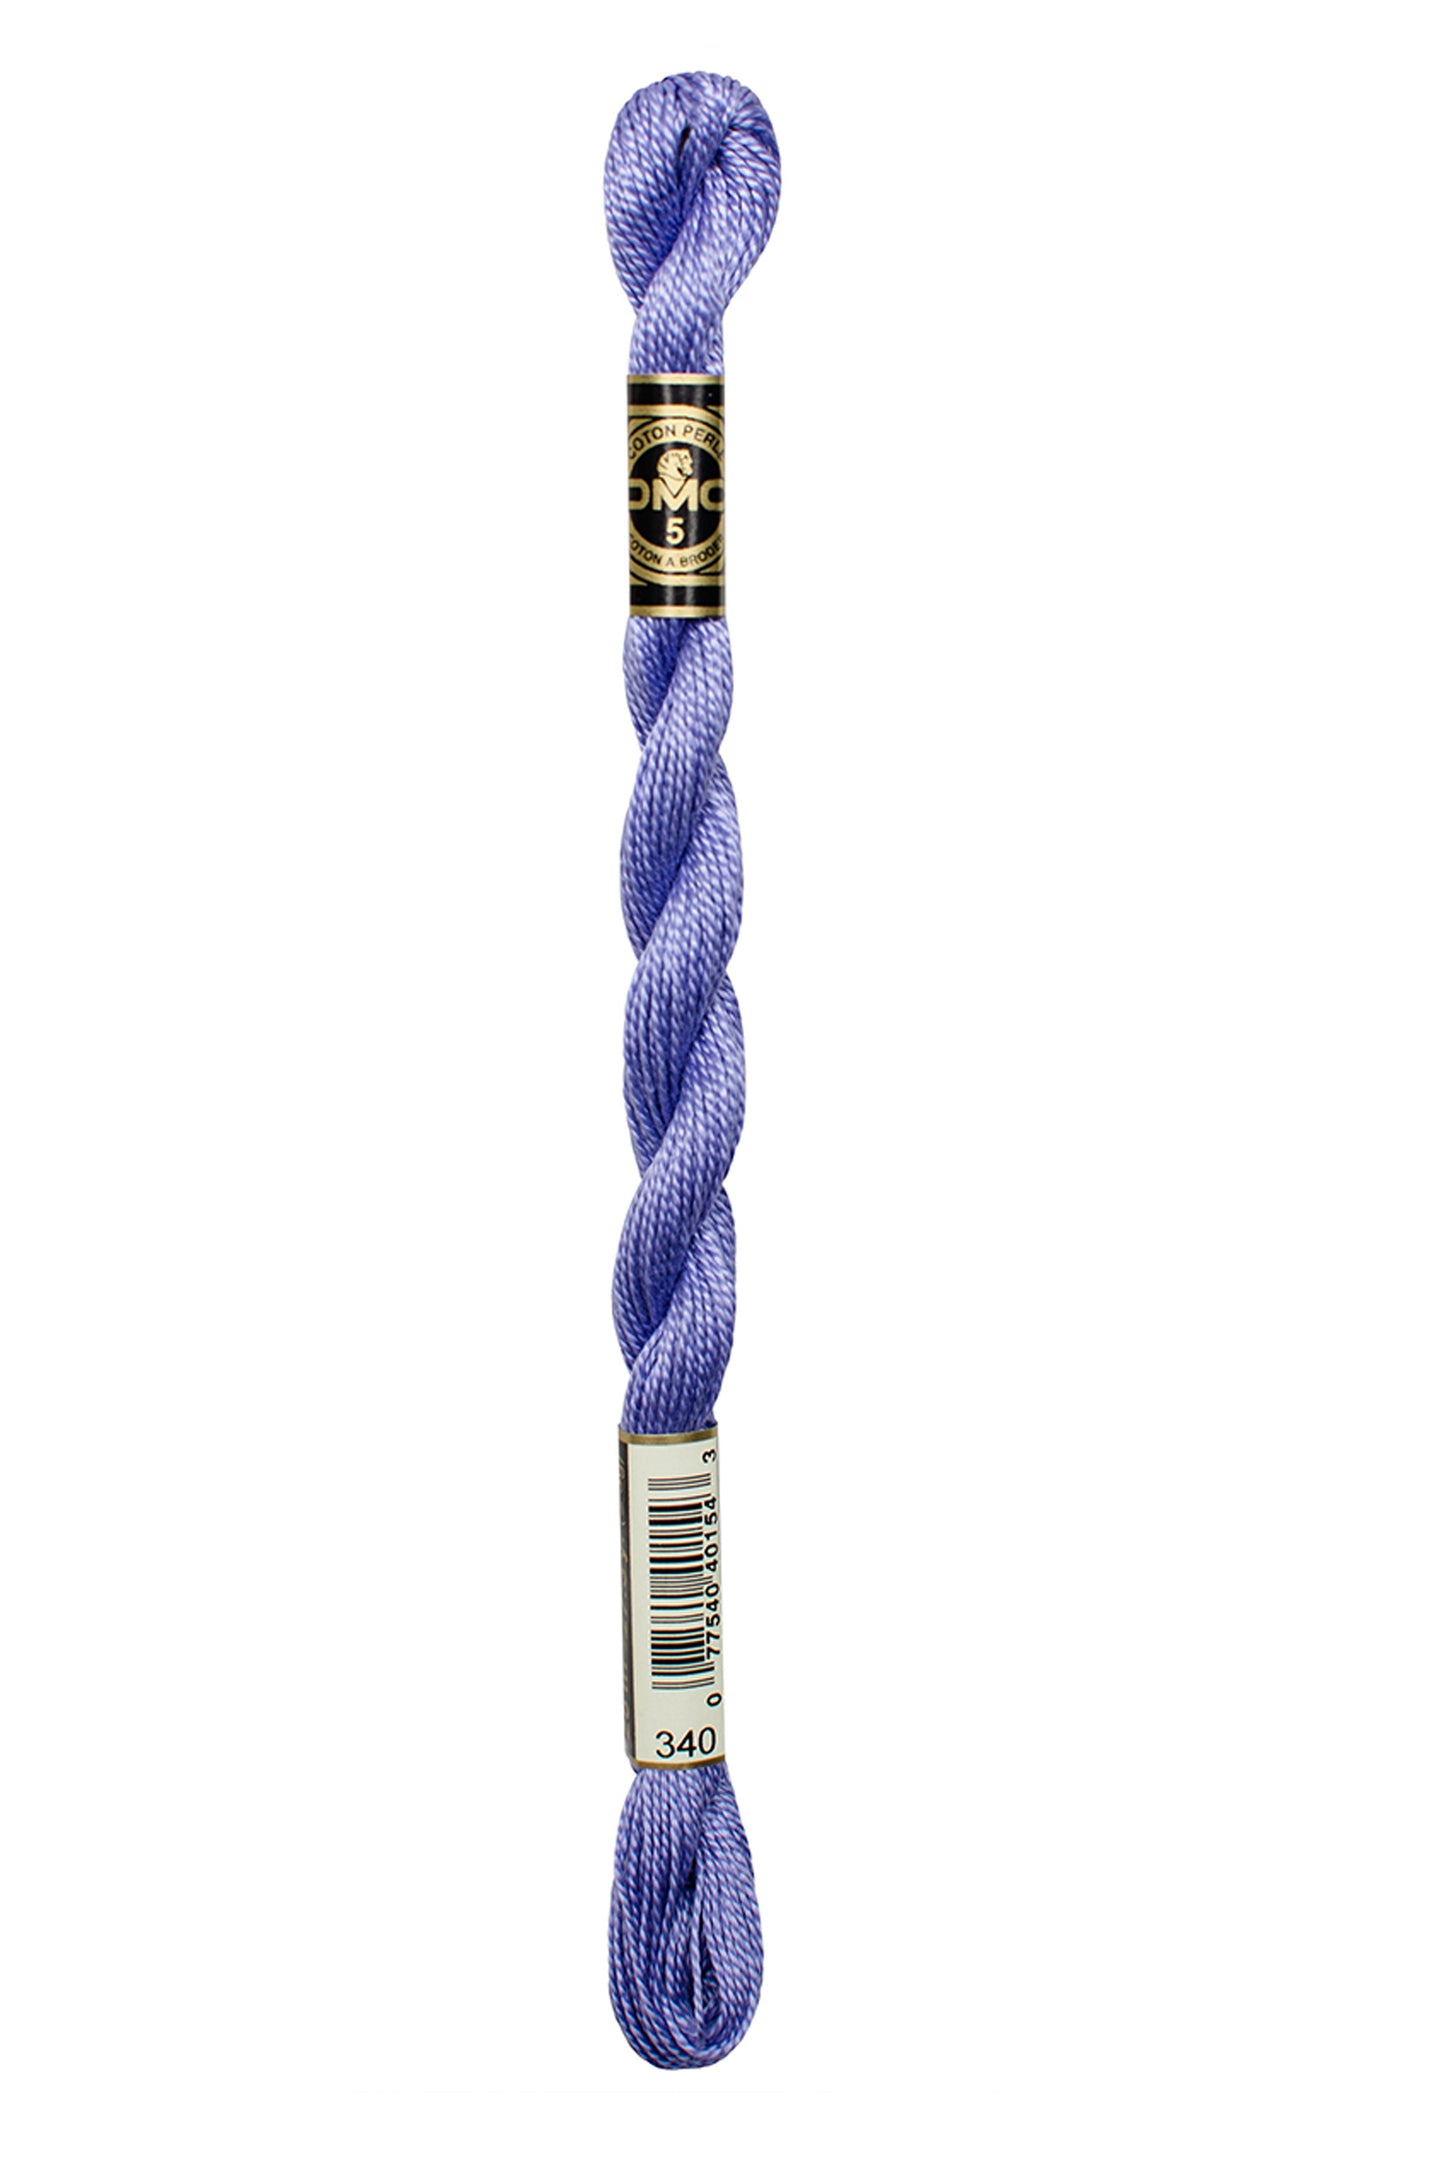 340 Medium Blue Violet – DMC #5 Perle Cotton Skein